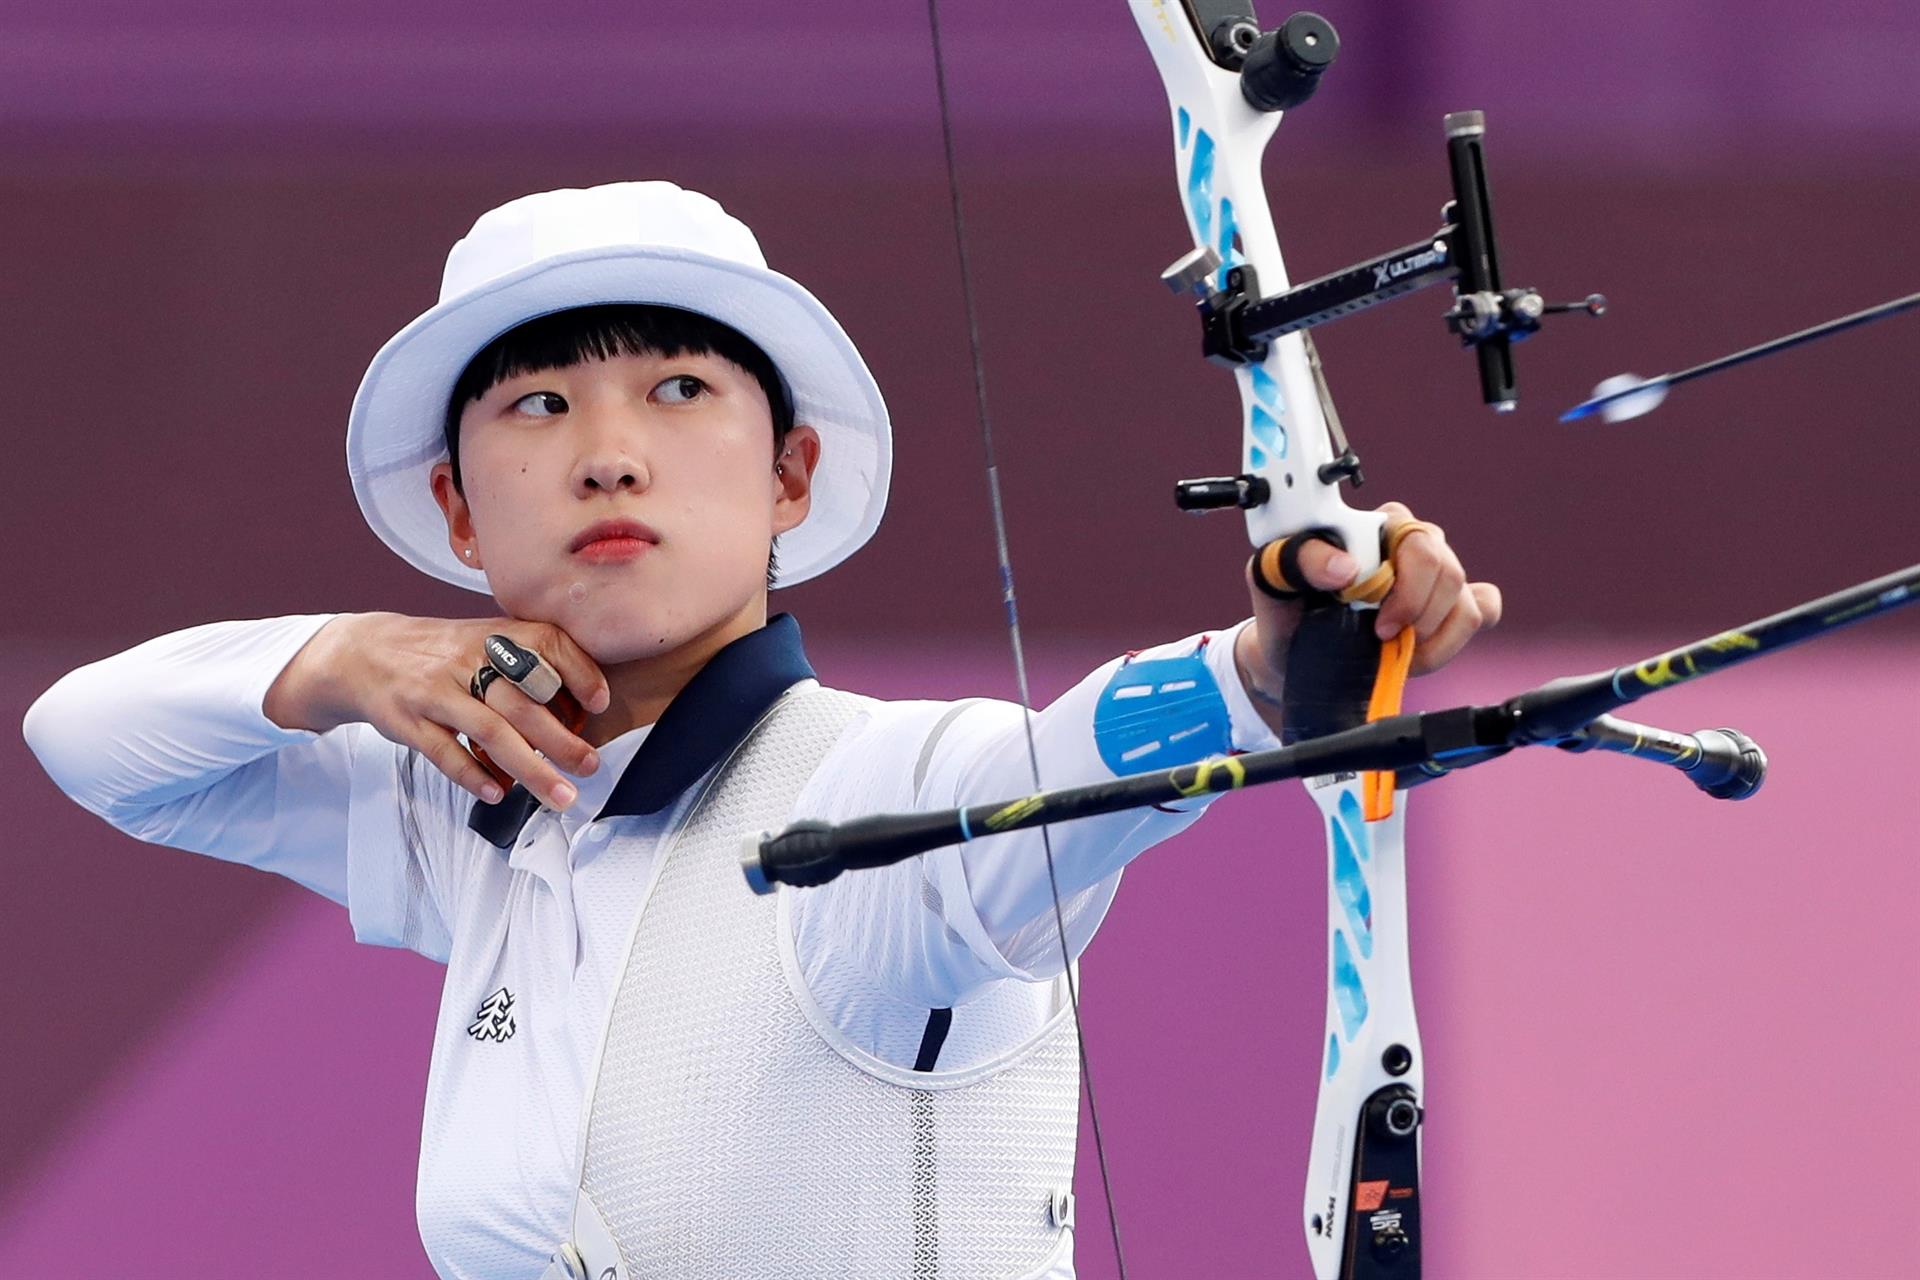 La medallista sur coreana, An San, ha recibido diversos ataques misóginos a través de internet debido a su corte de pelo y los políticos del país condenaron sus comentarios.